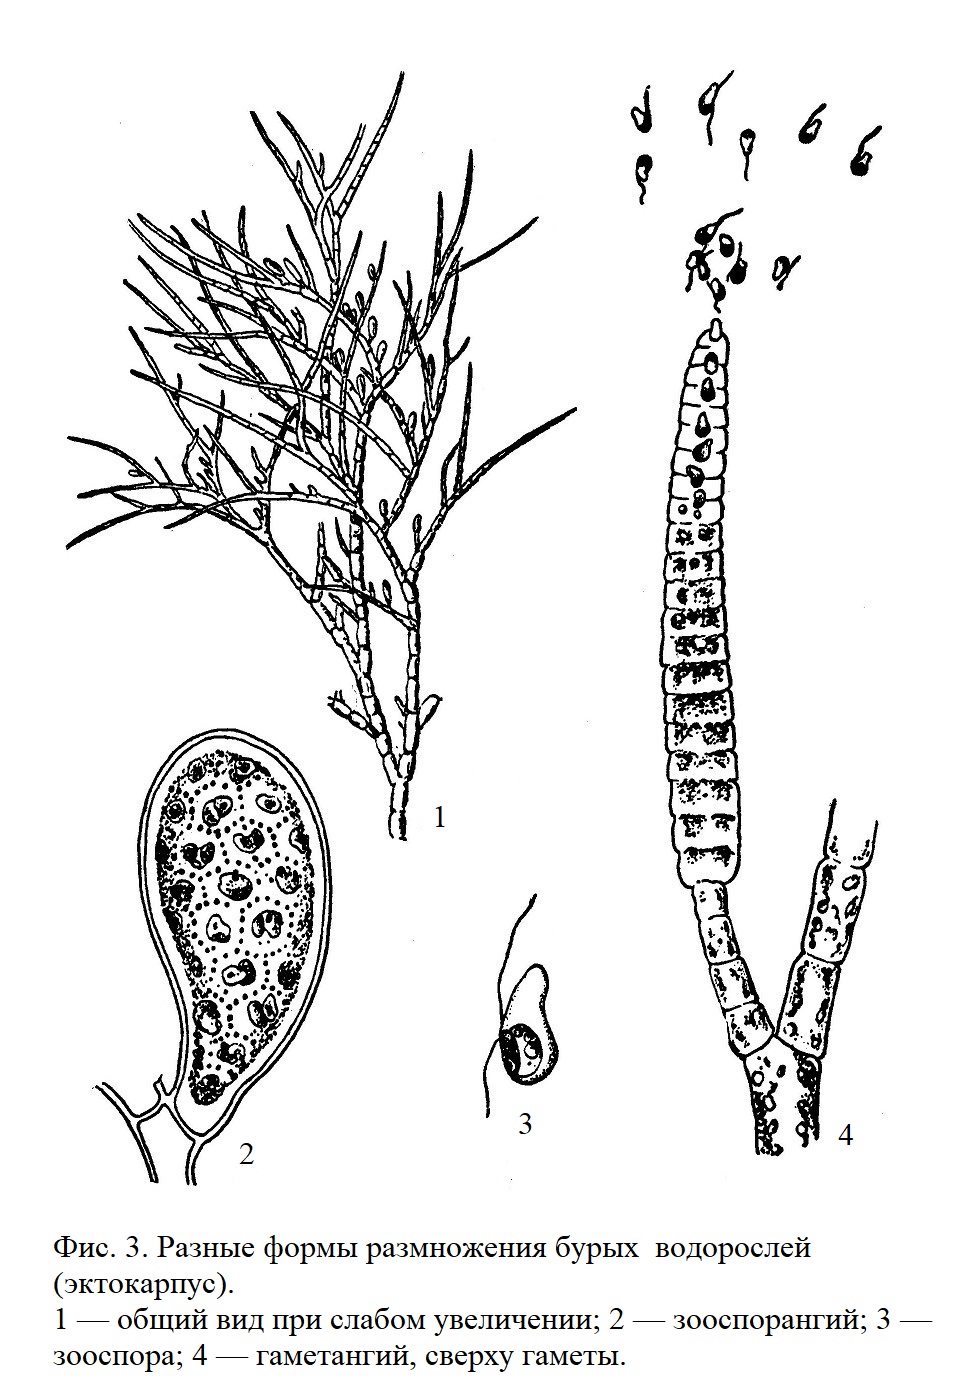 Разные формы размножения бурых водорослей (эктокарпус)